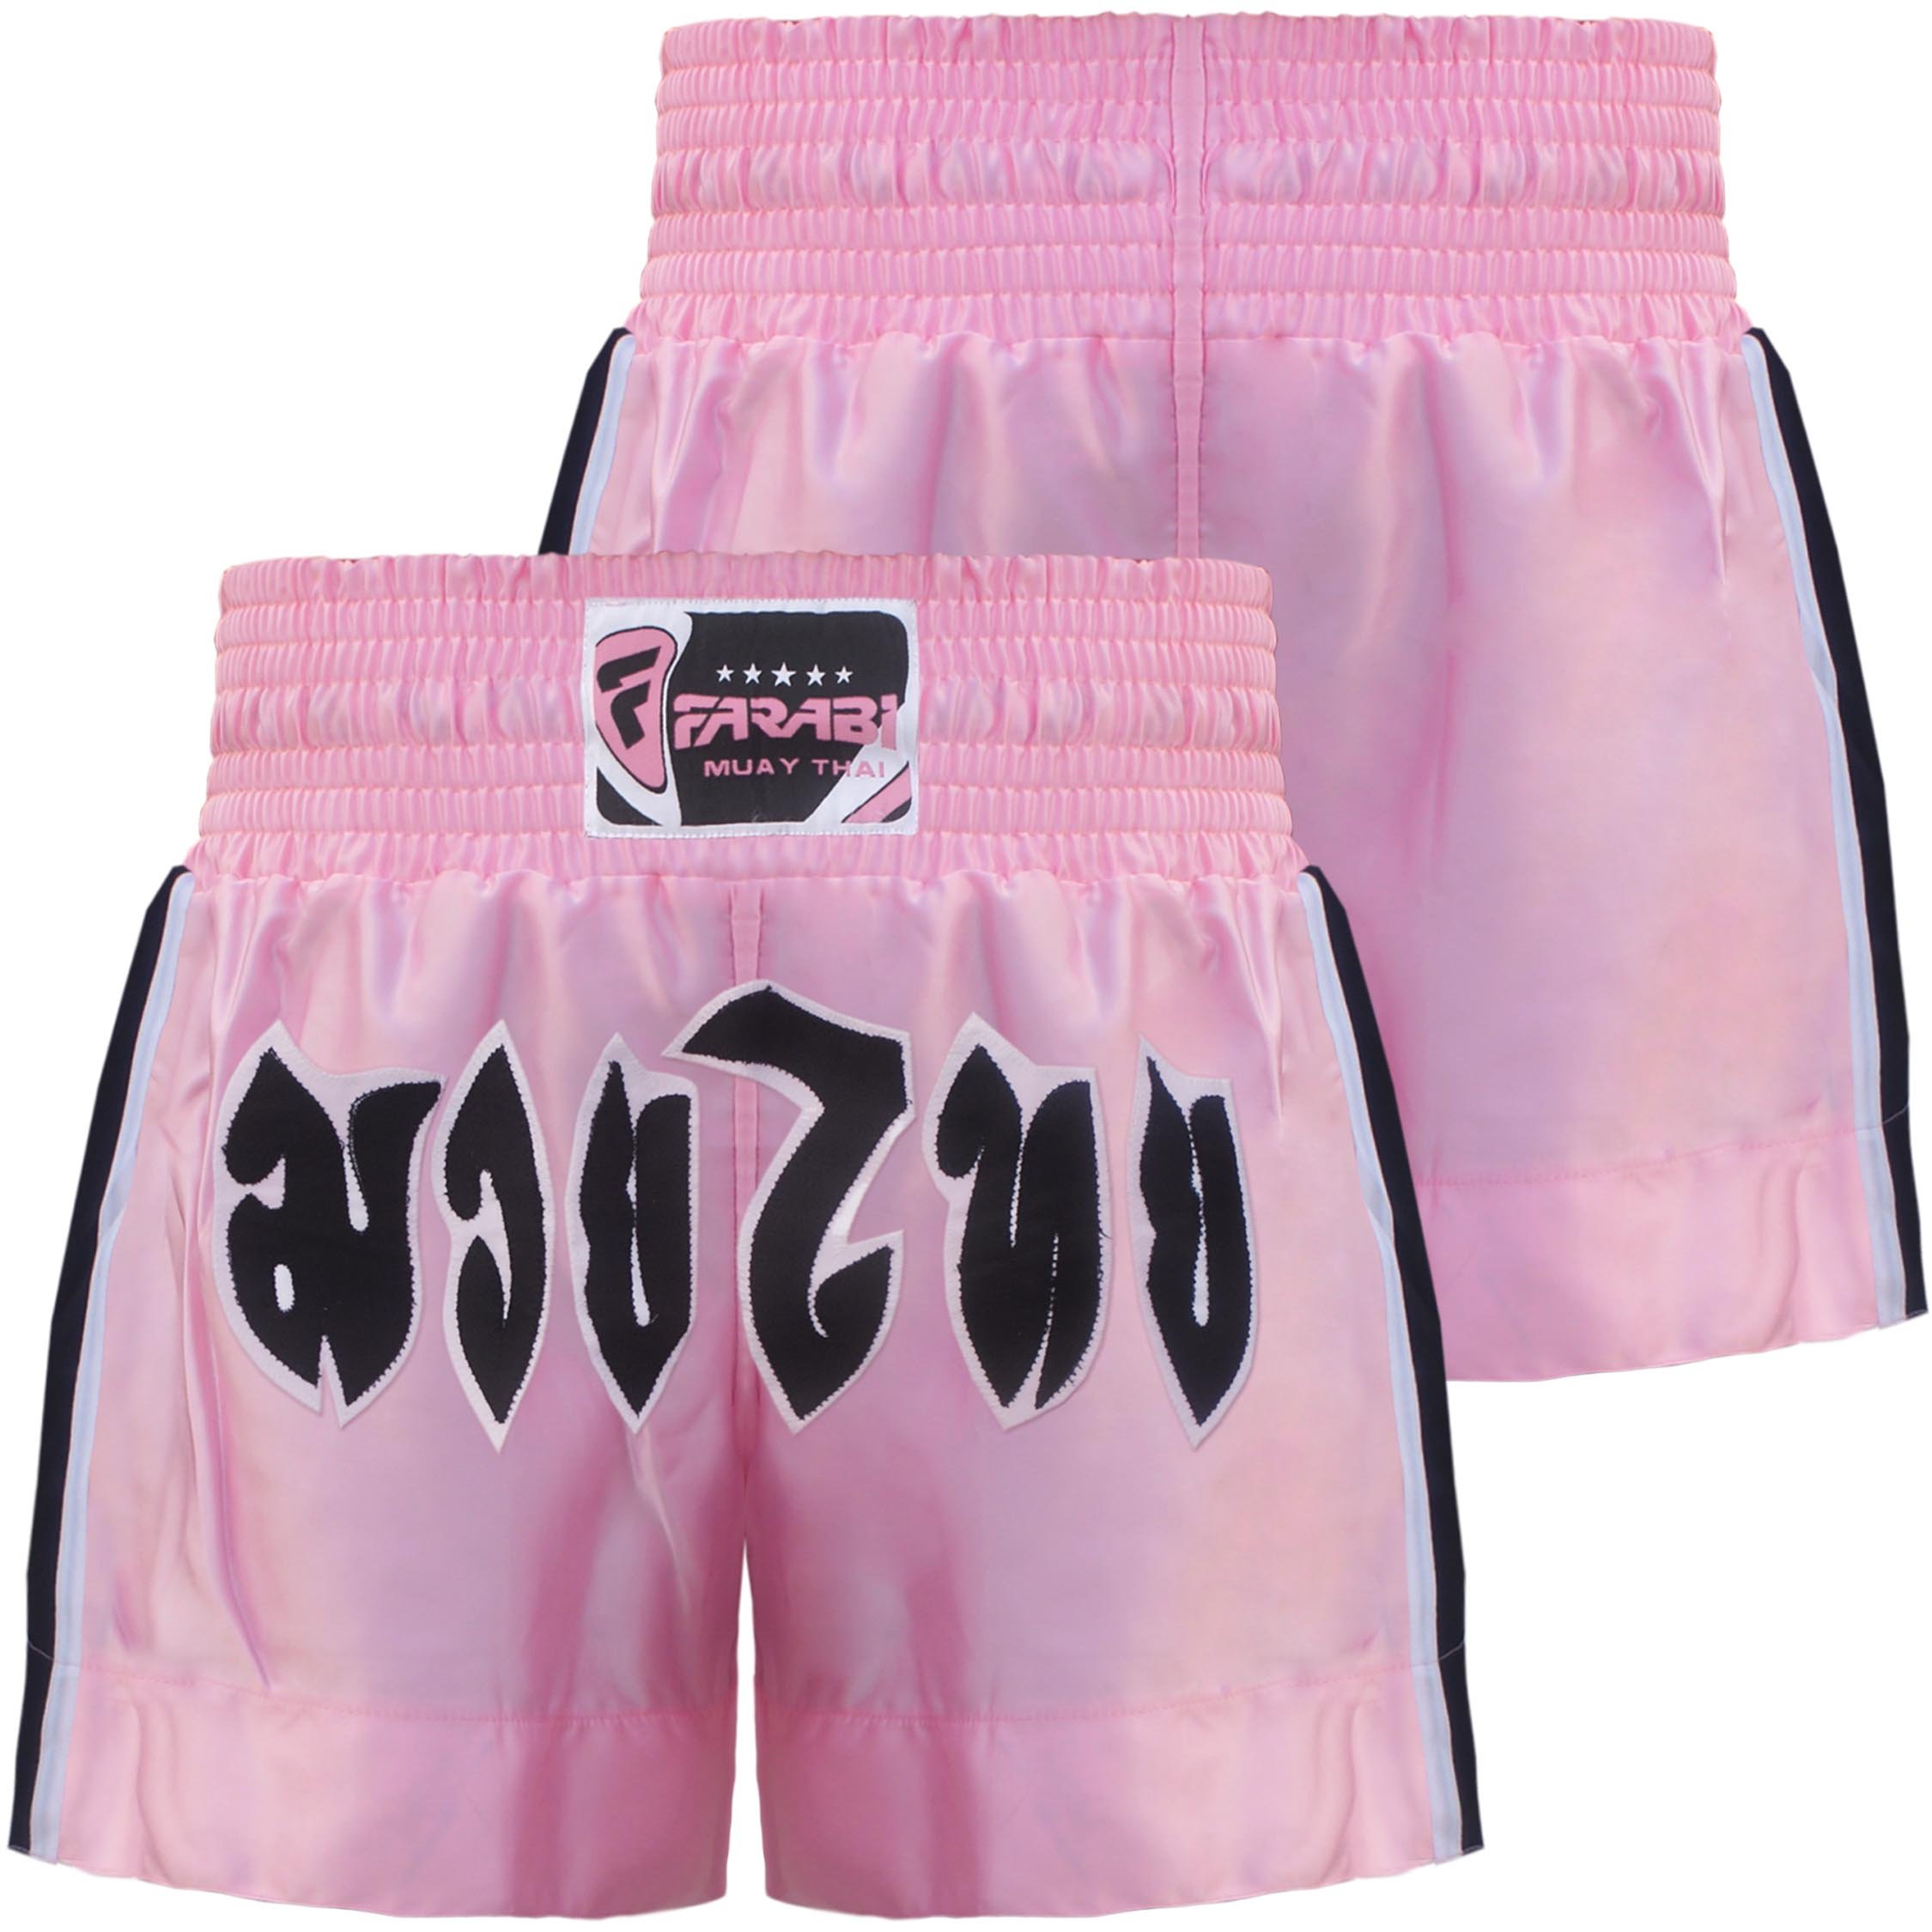 Farabi Sports Muay Thai Shorts - Training Short MMA Kampfsport Boxshorts (Pink, Medium)